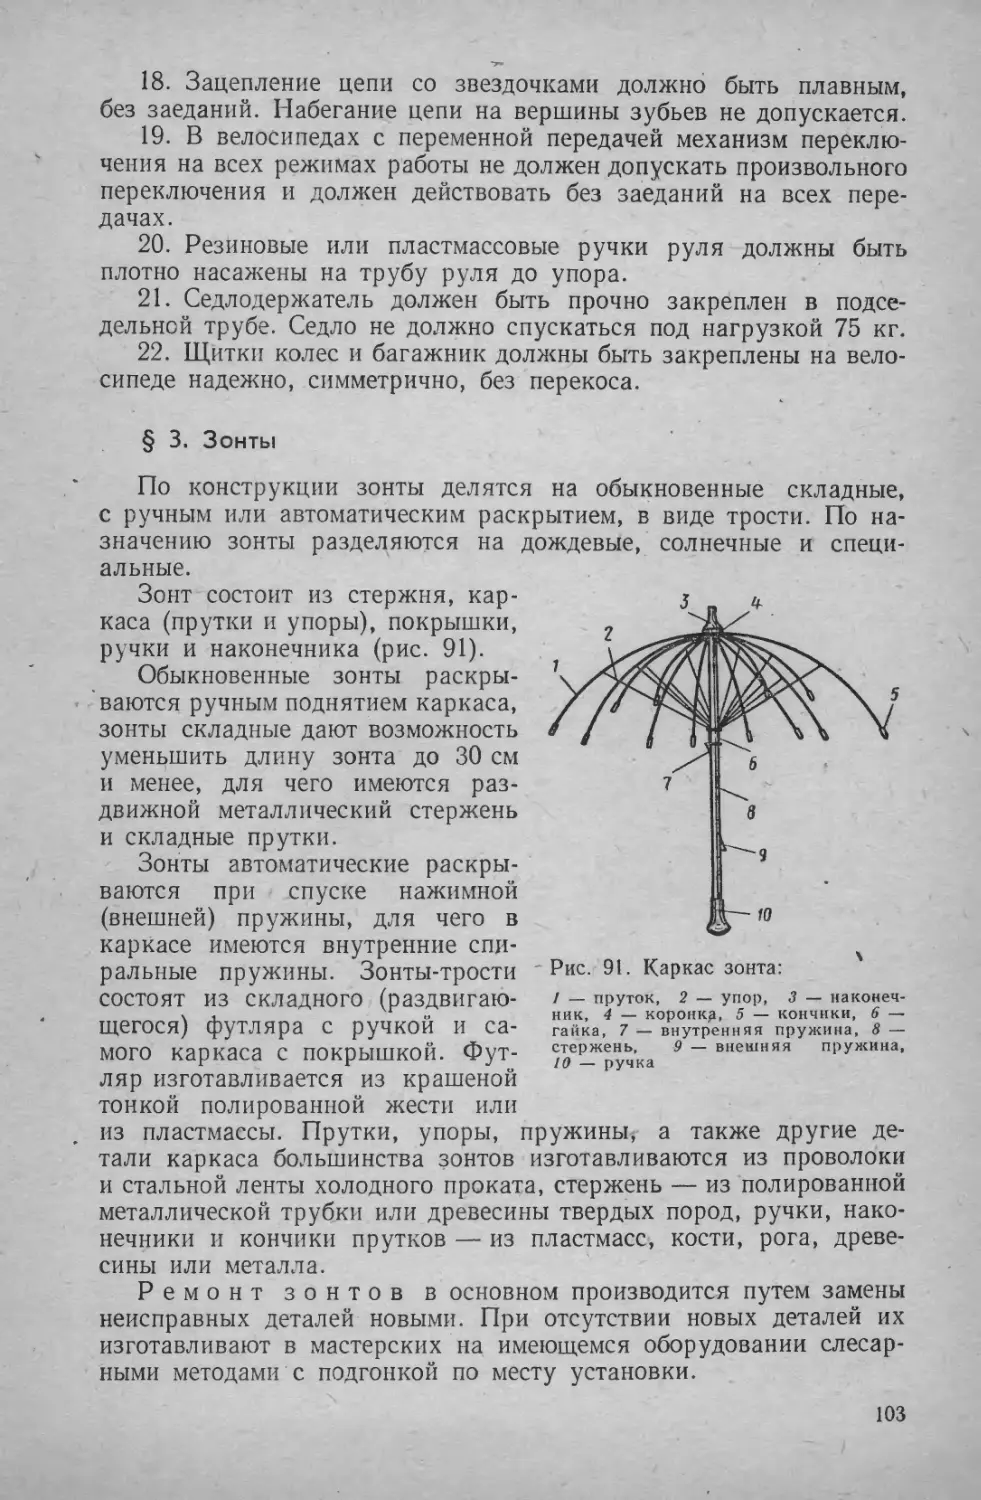 § 3. Зонты